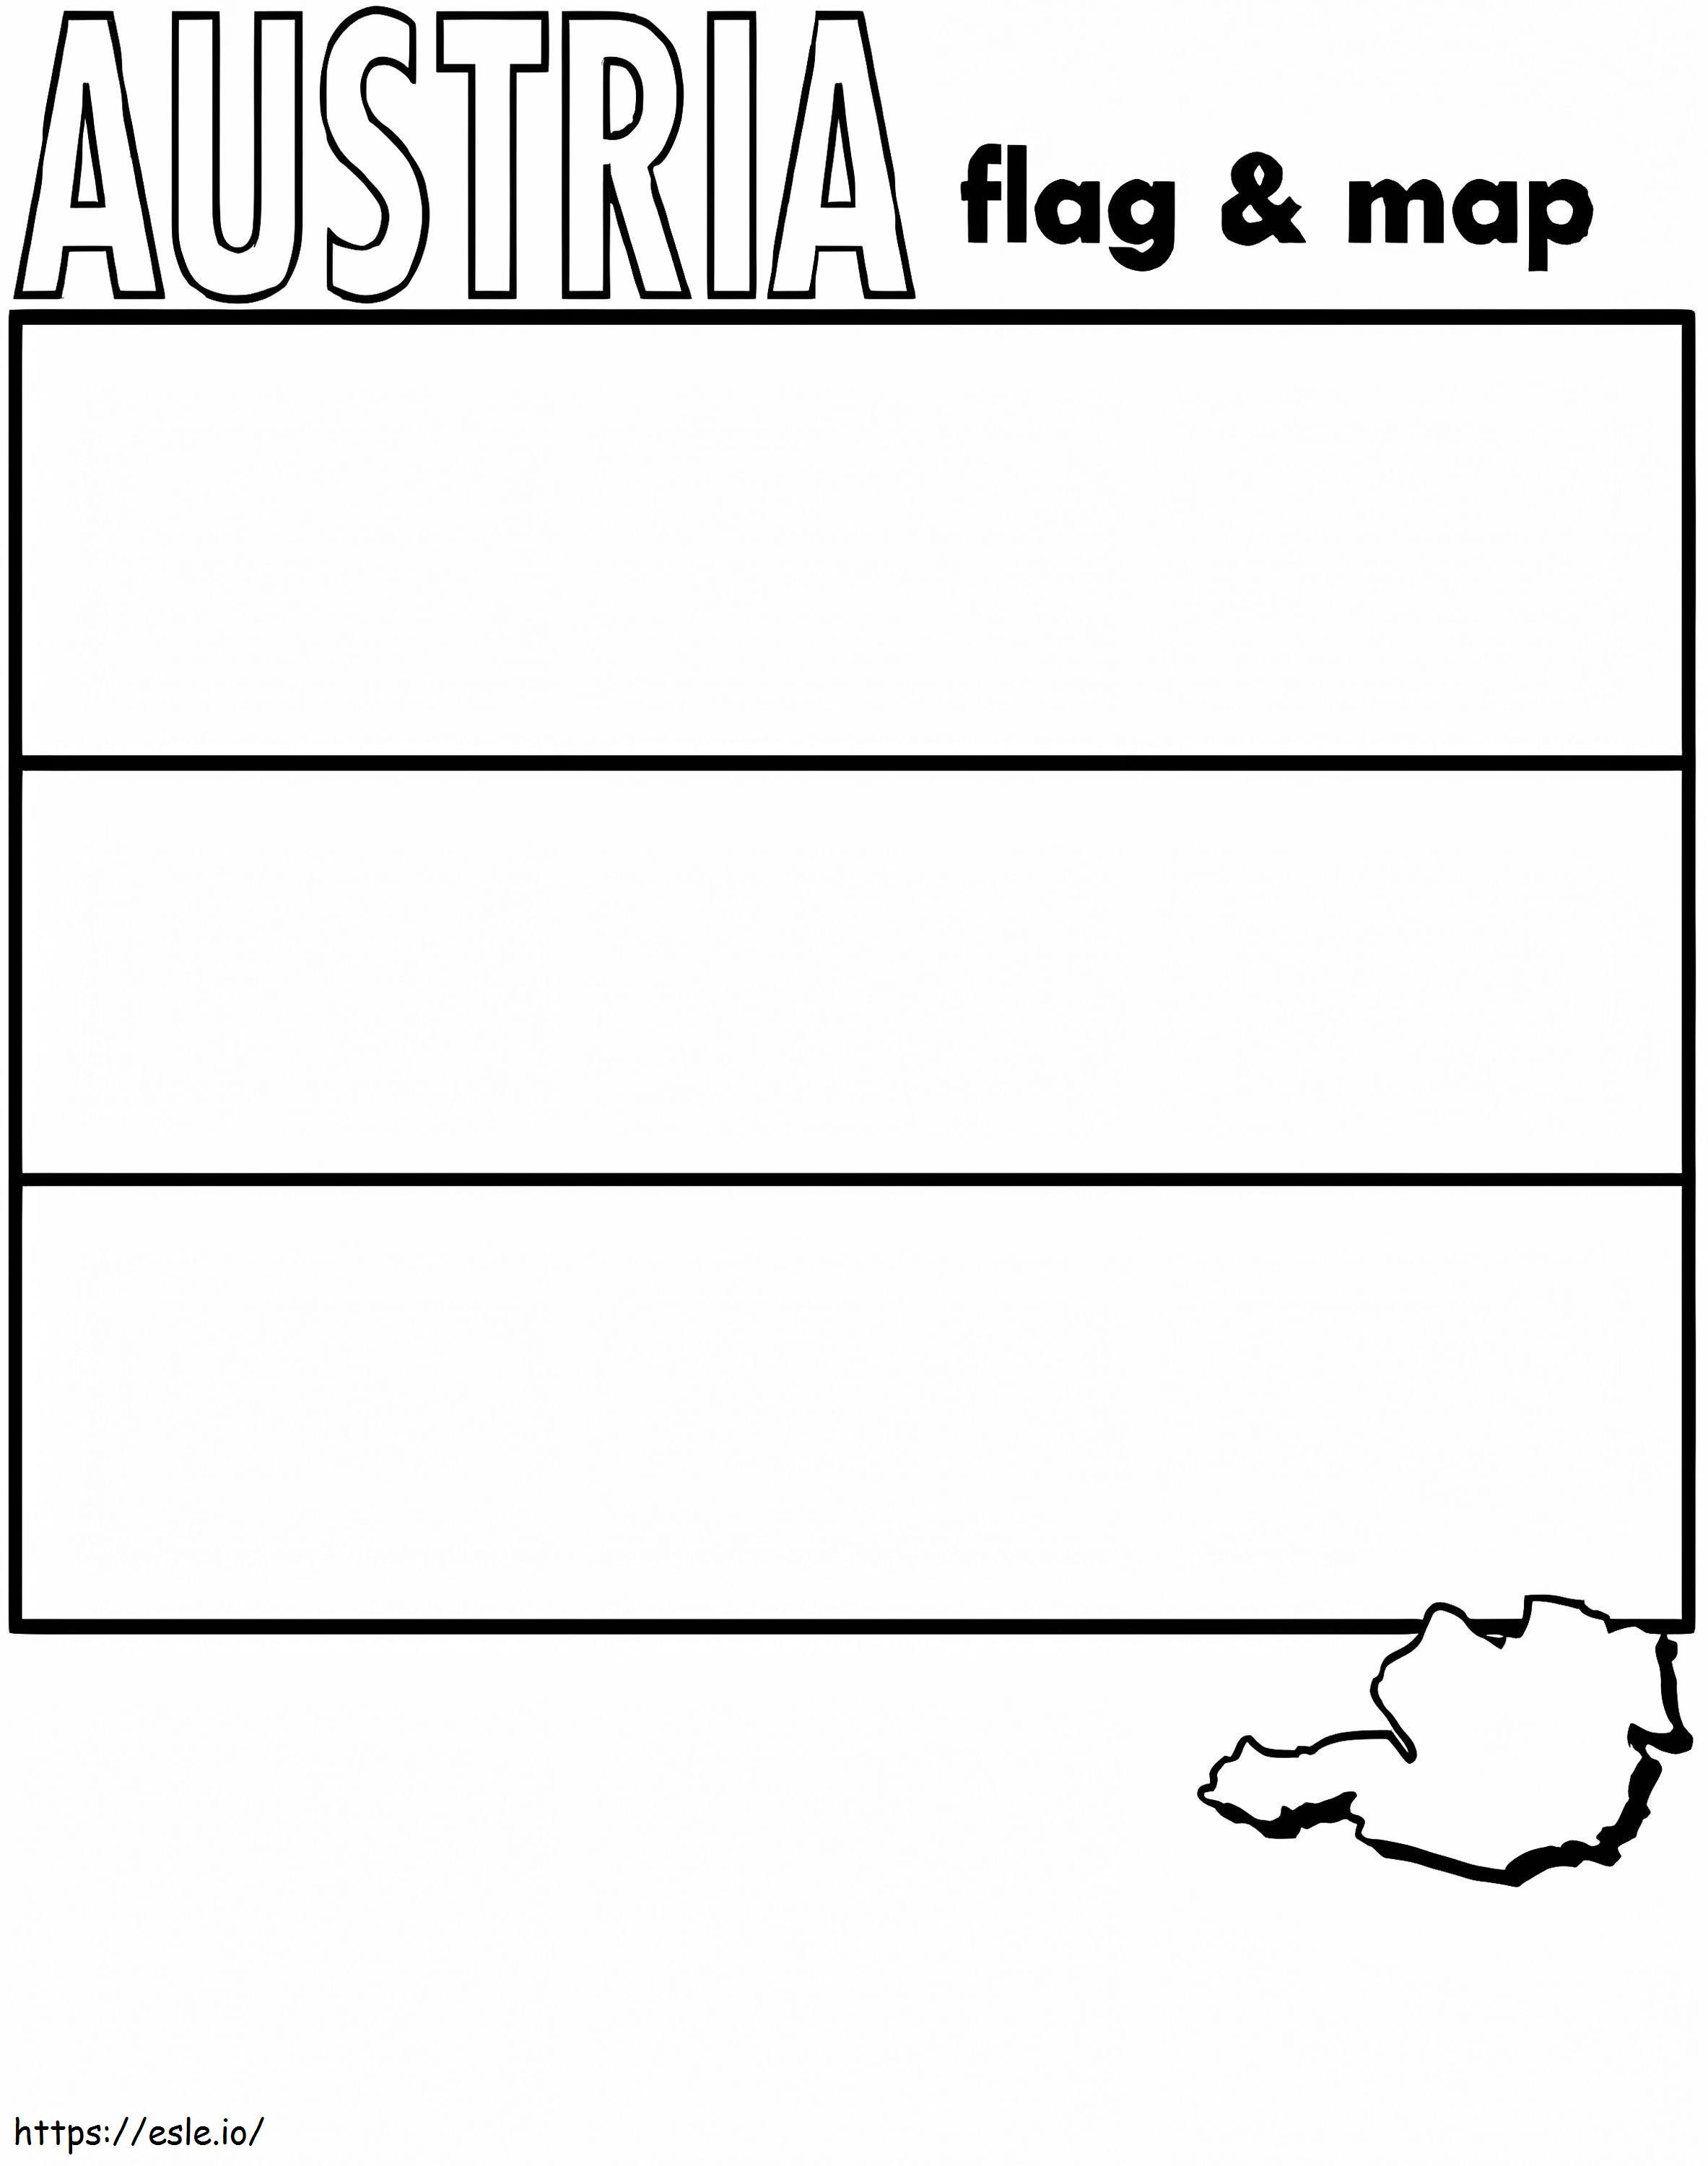 Bandiera e mappa dell'Austria da colorare